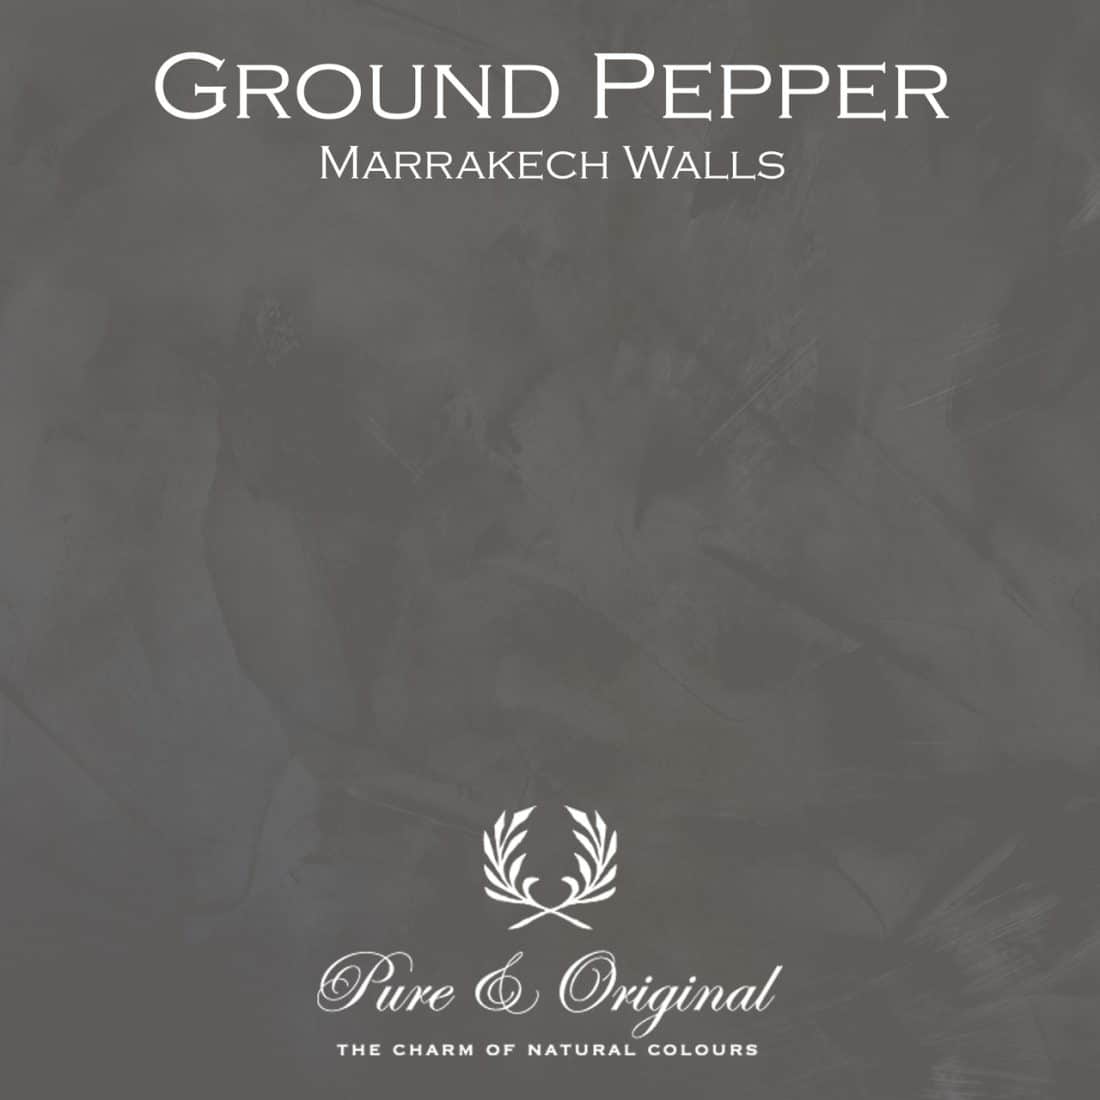 Ground Pepper Marrakech Walls Pure Original